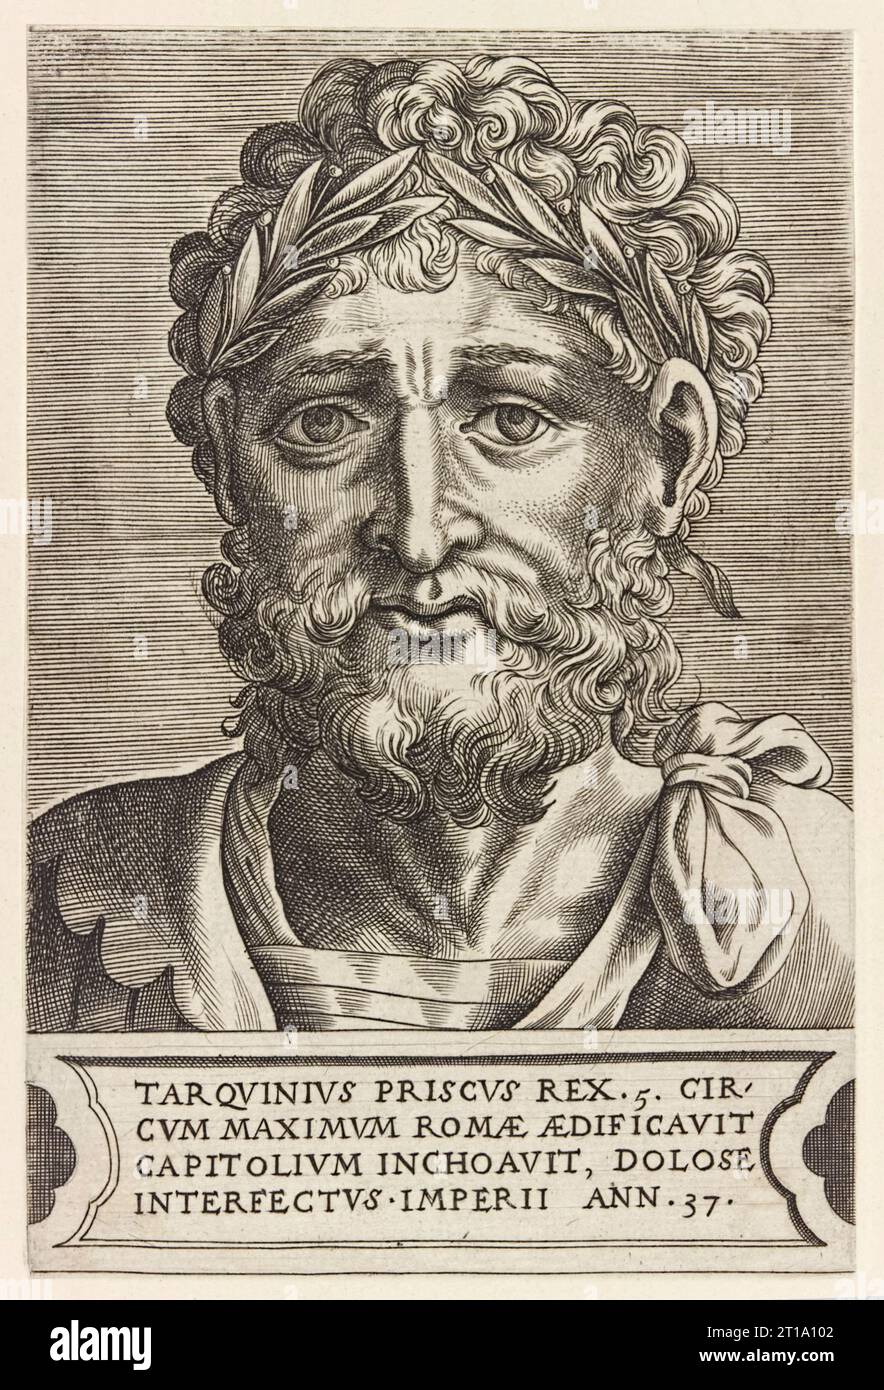 Lucius Tarquinius Priscus (règne c. 616-578BC) cinquième roi de Rome, gravure de Frans Huys (vers 1522-1562) des empereurs et des Empereurs romains publiée en 1550. Banque D'Images